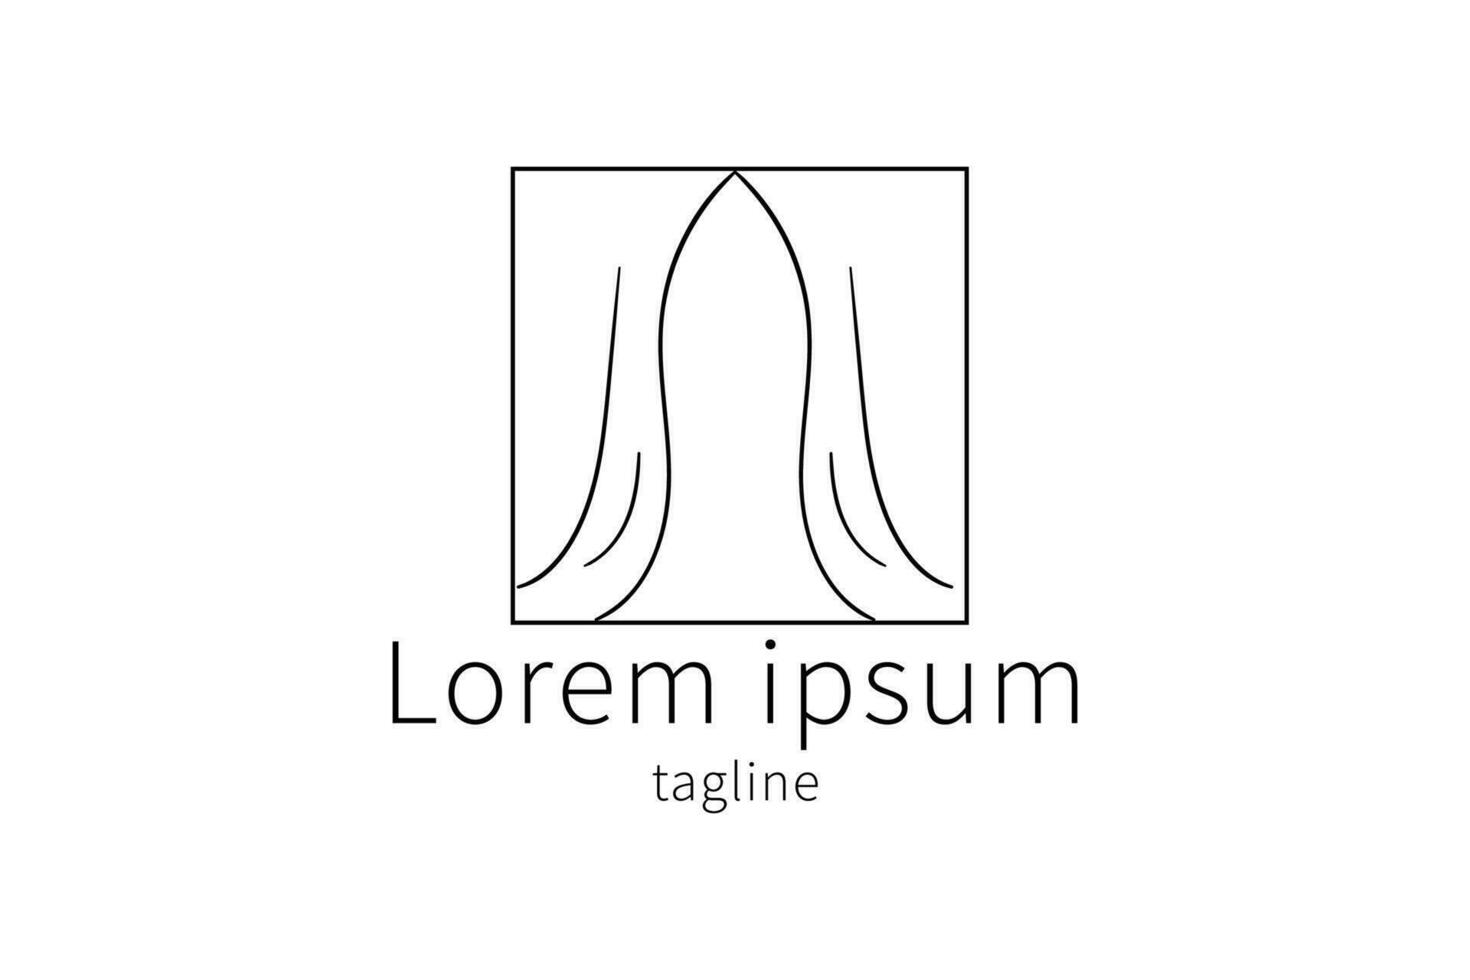 uniek logo-ontwerp vector